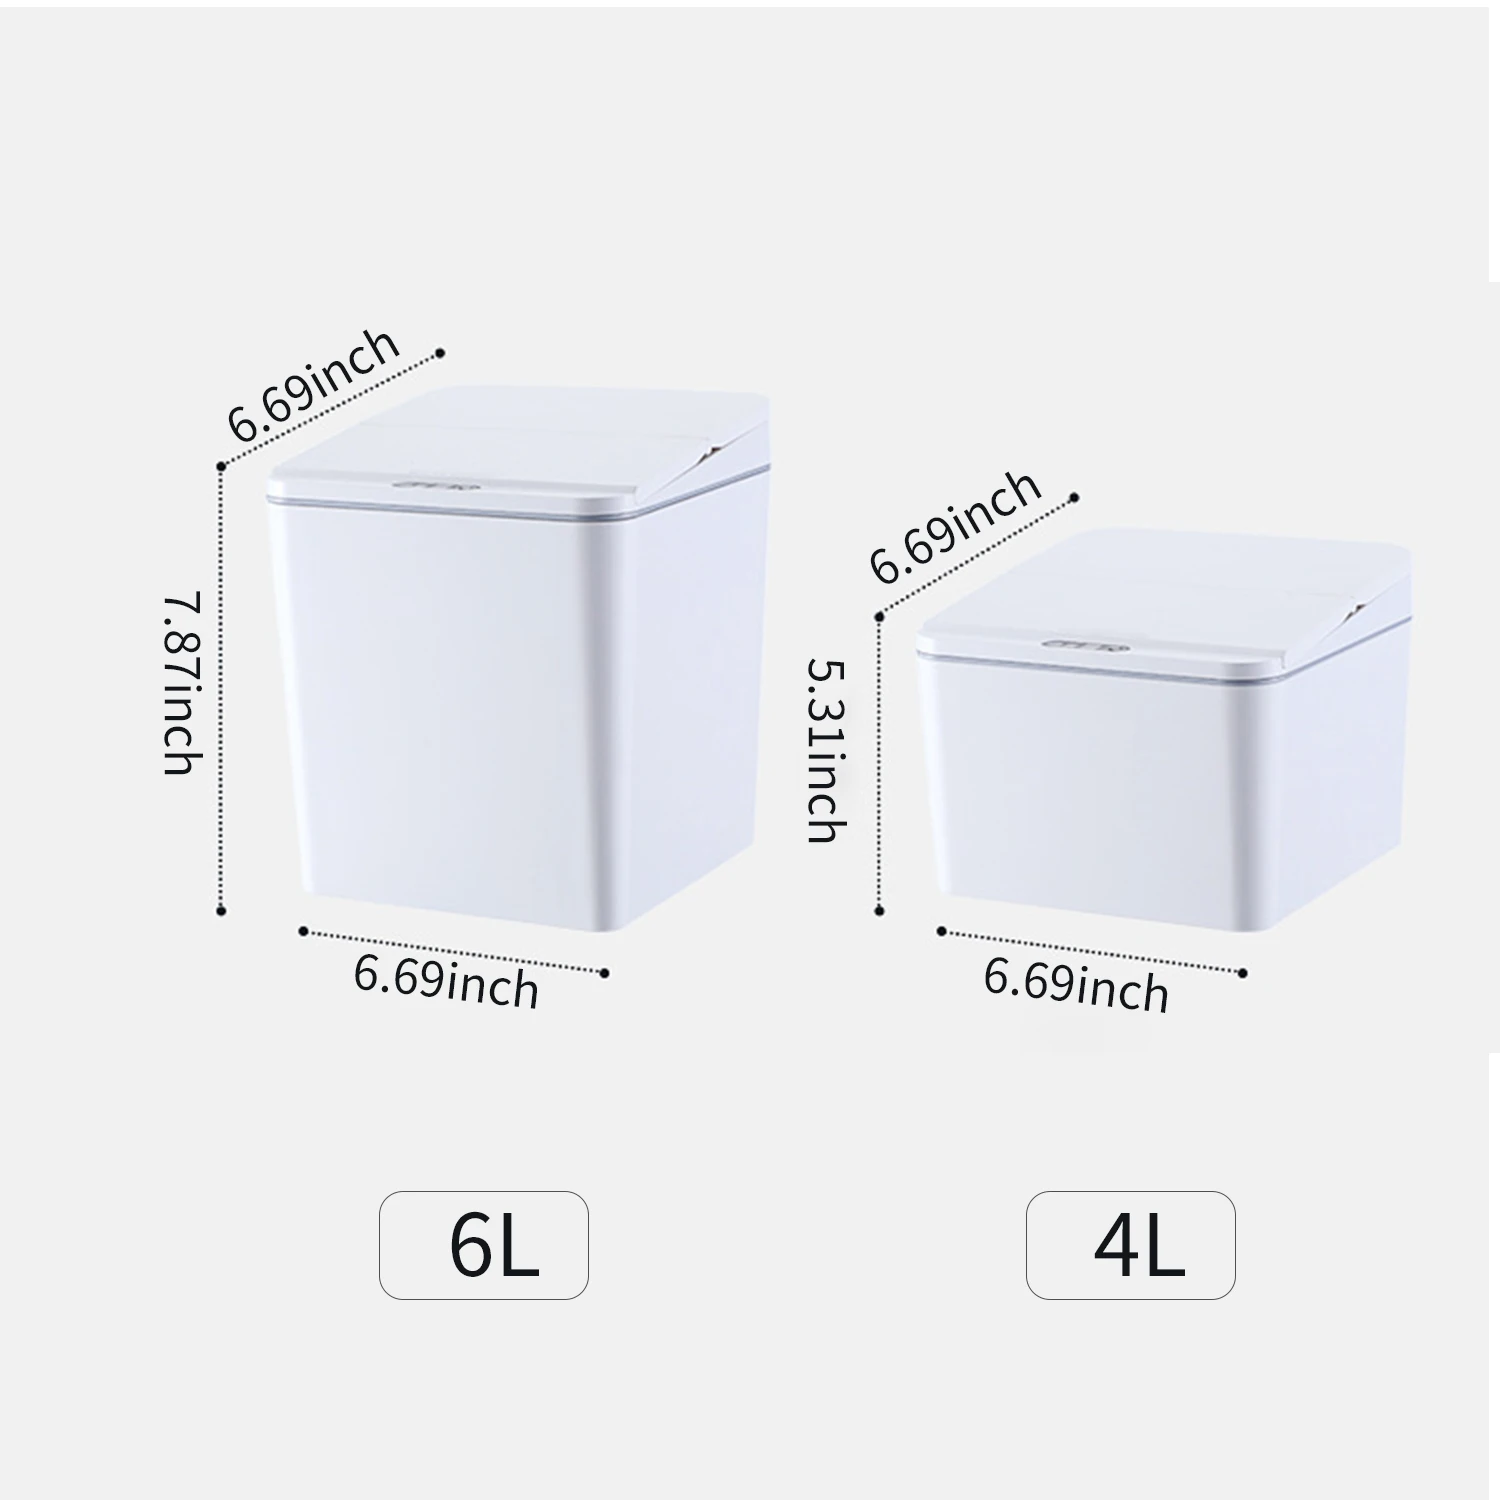 Square Smart Rechargeable Touchless Desktop/Couch Trash Can Decor Hi-Tech Appliances color: 4L gray|4L white|6L gray|6L white